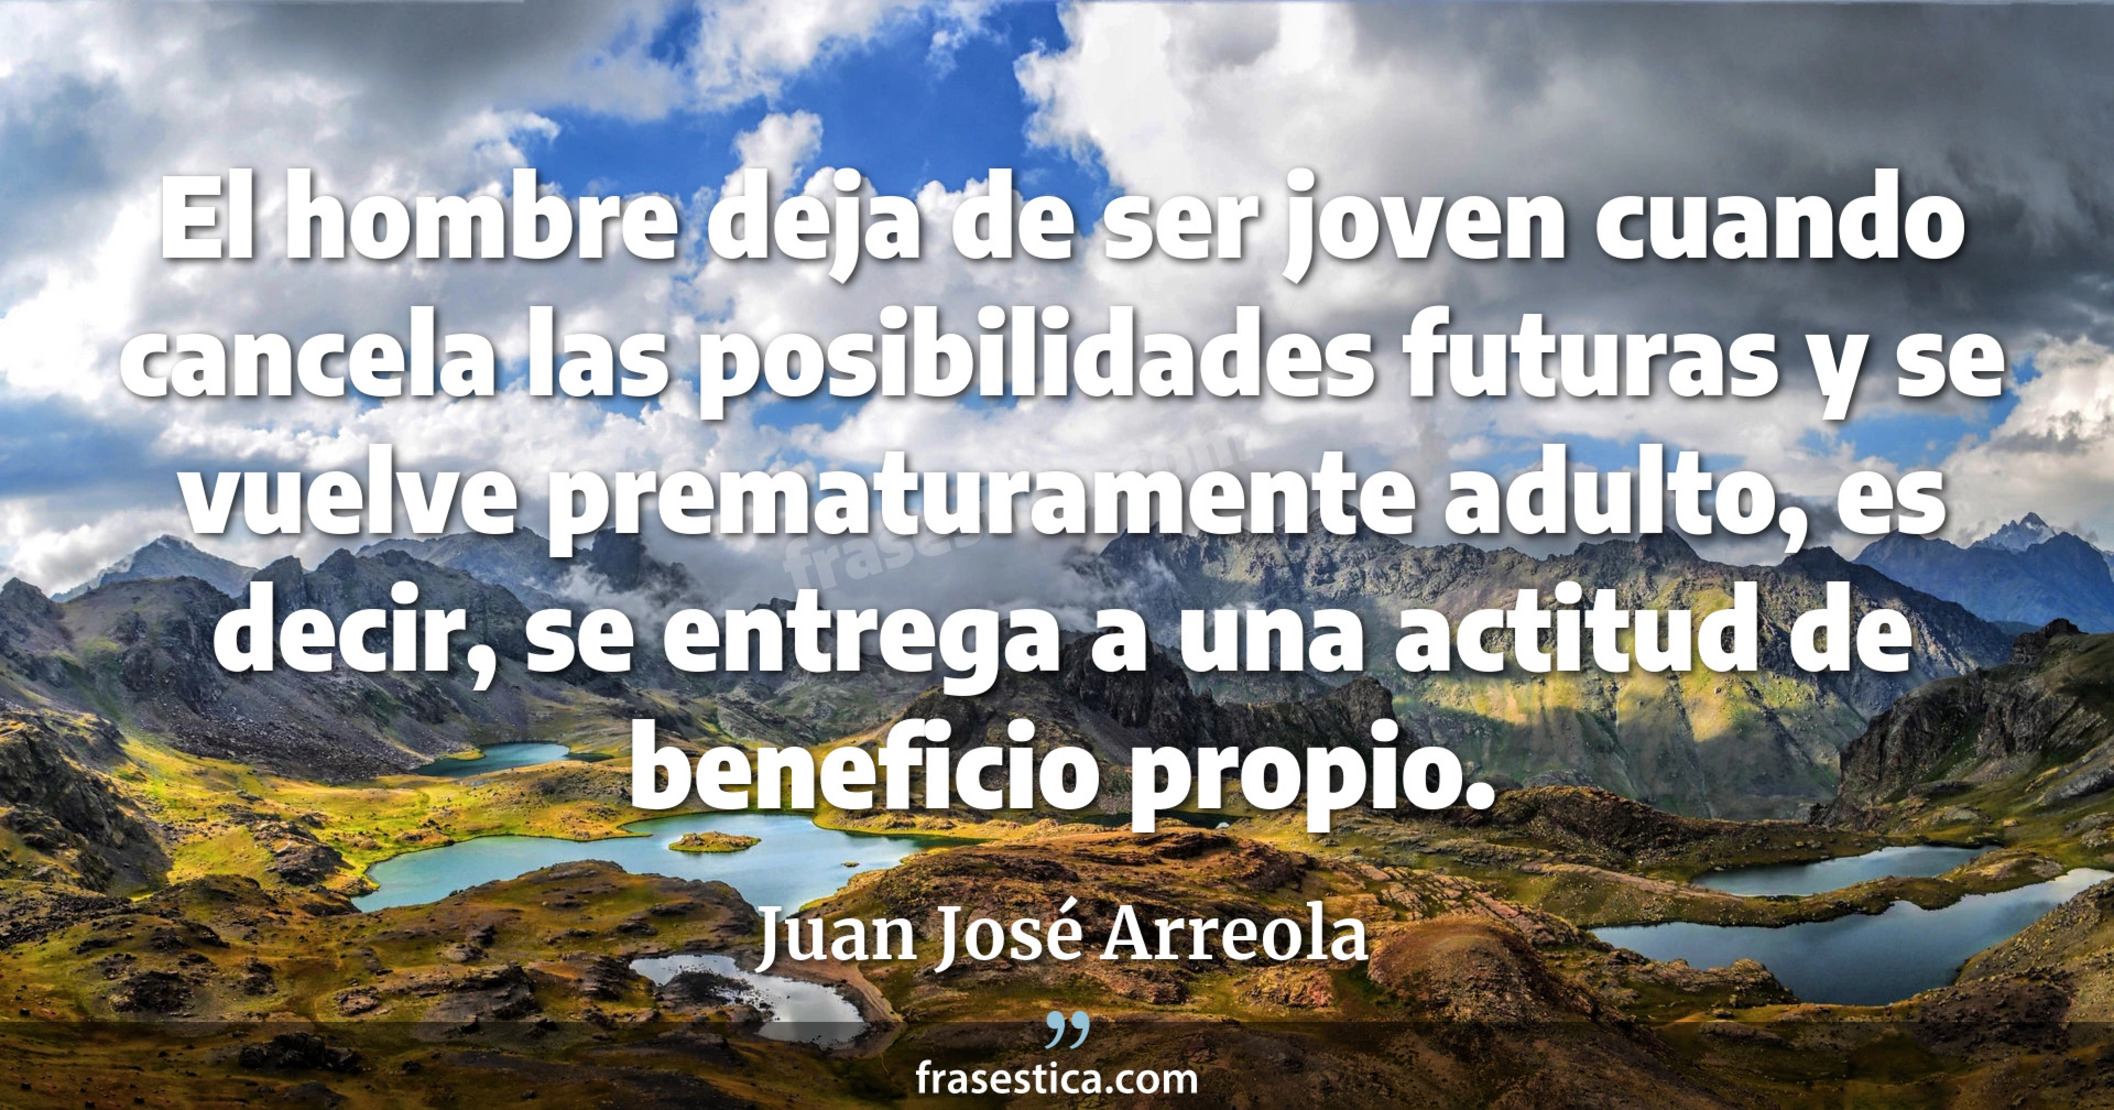 El hombre deja de ser joven cuando cancela las posibilidades futuras y se vuelve prematuramente adulto, es decir, se entrega a una actitud de beneficio propio. - Juan José Arreola